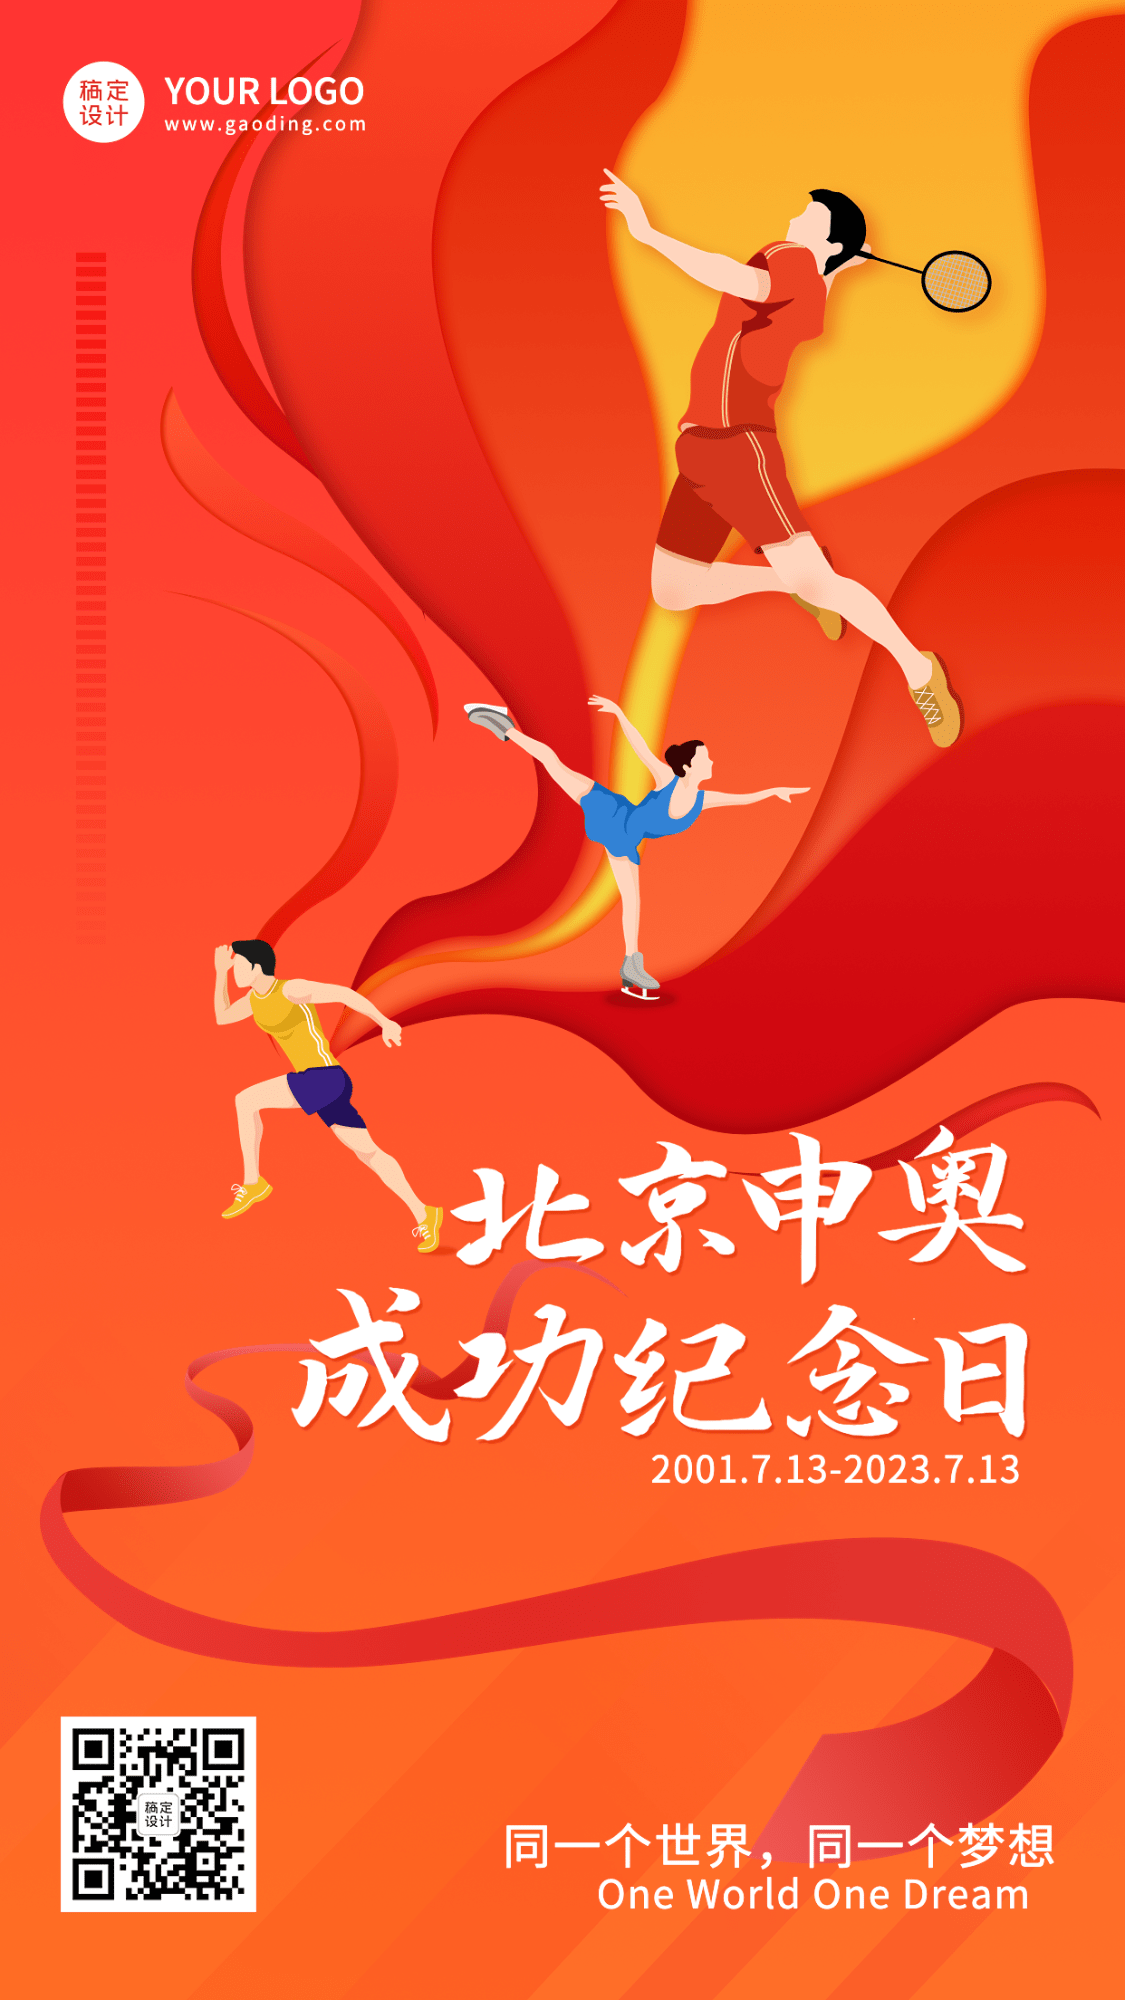 北京申奥成功纪念日节日宣传插画手机海报预览效果